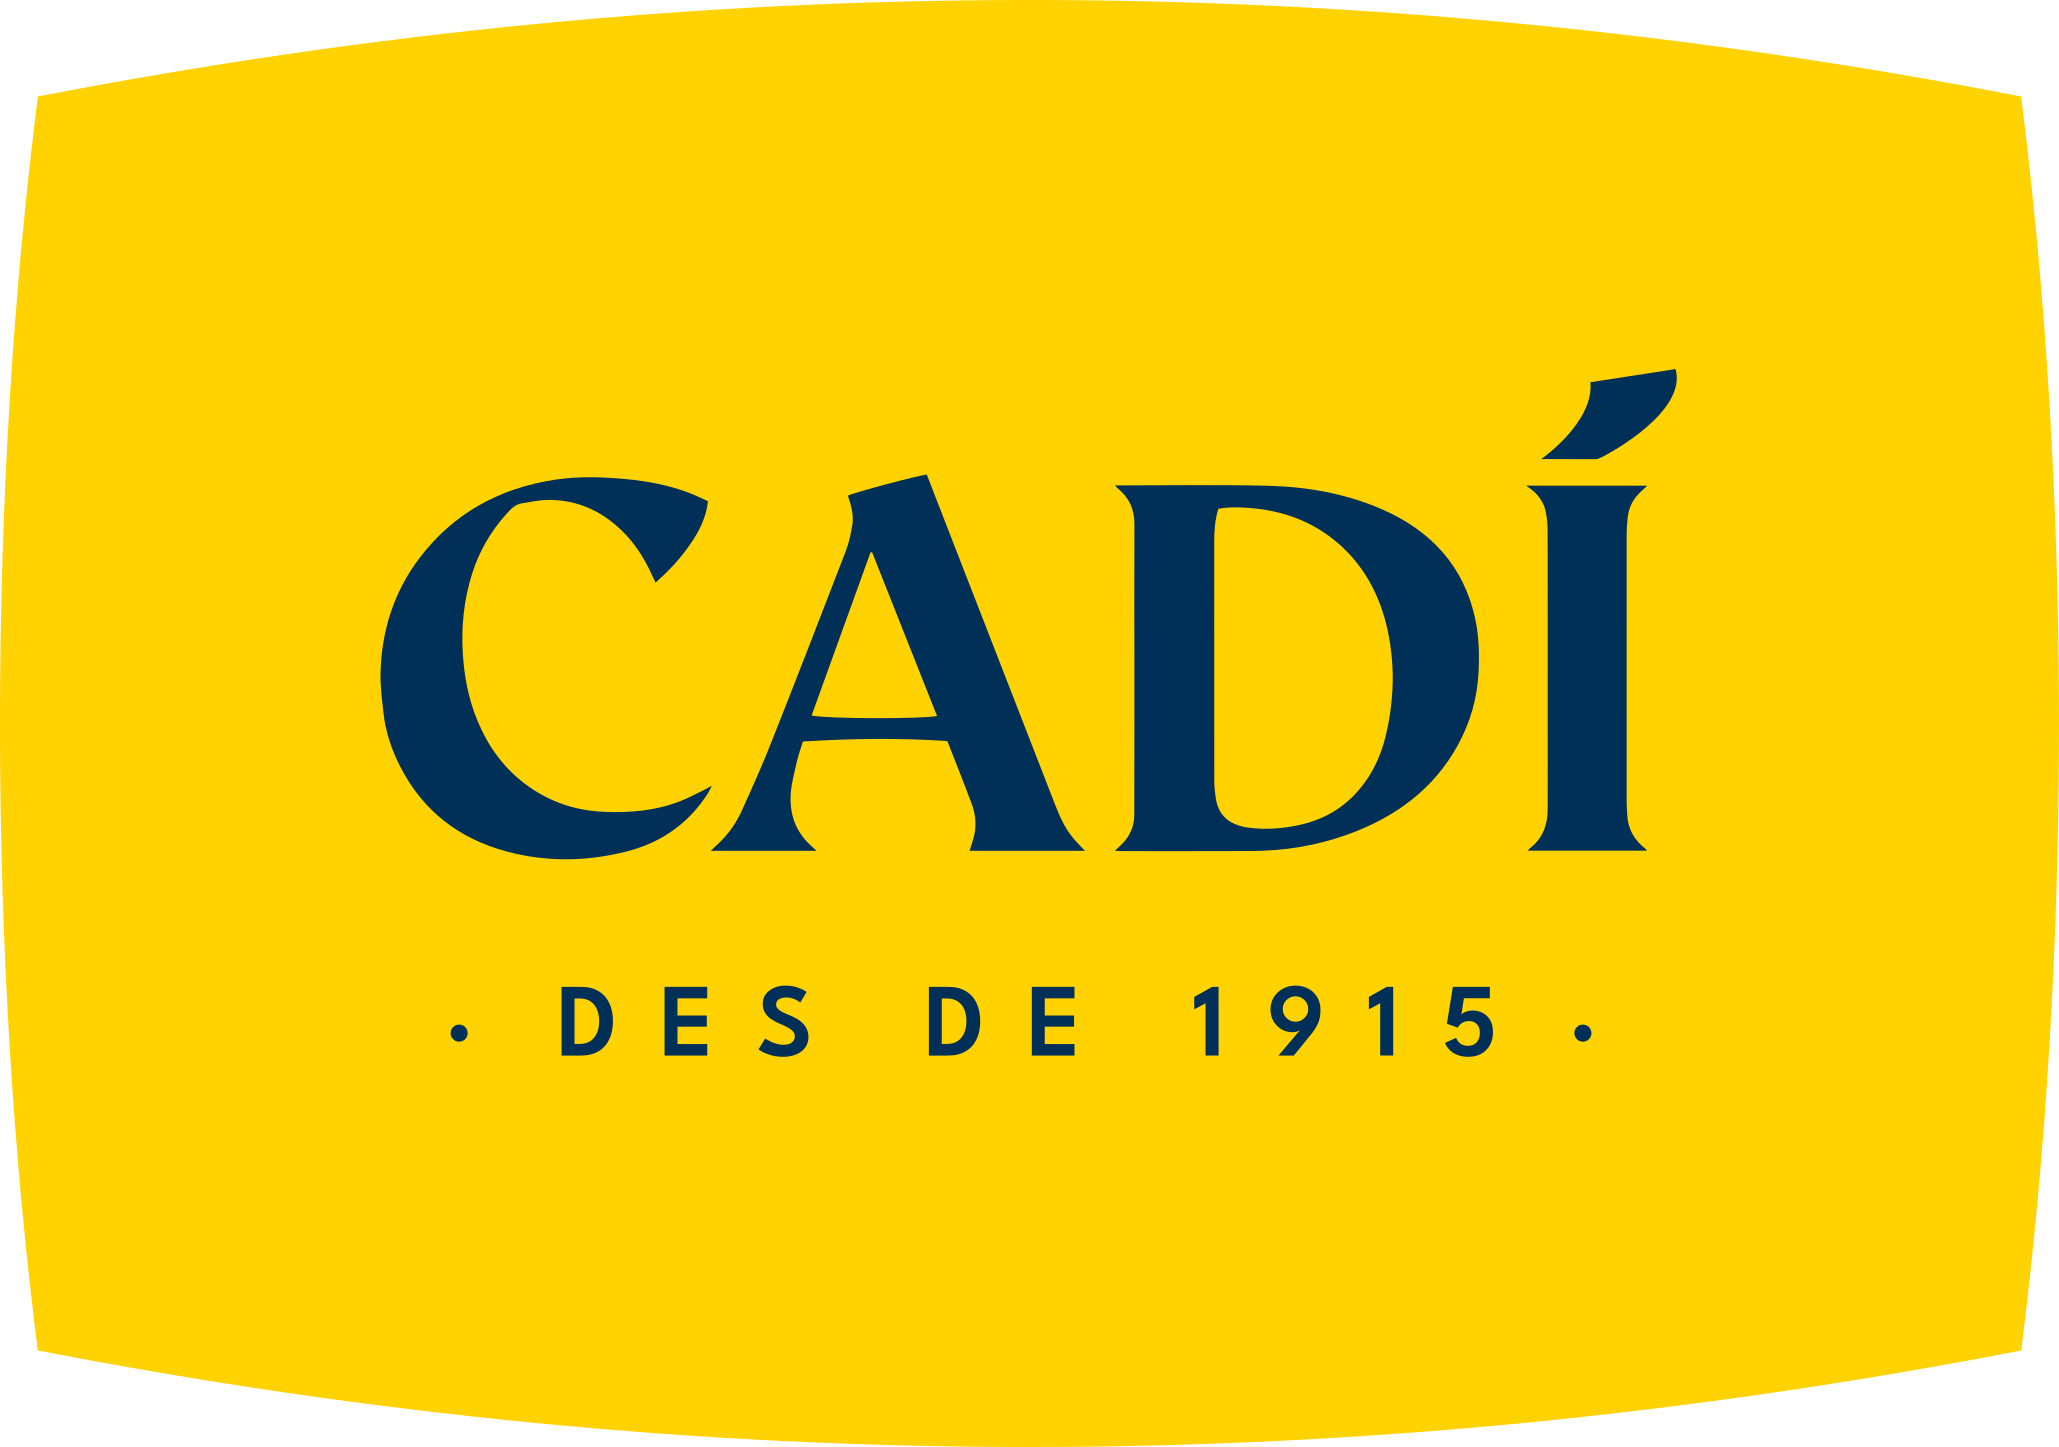 Cadí | Since 1915